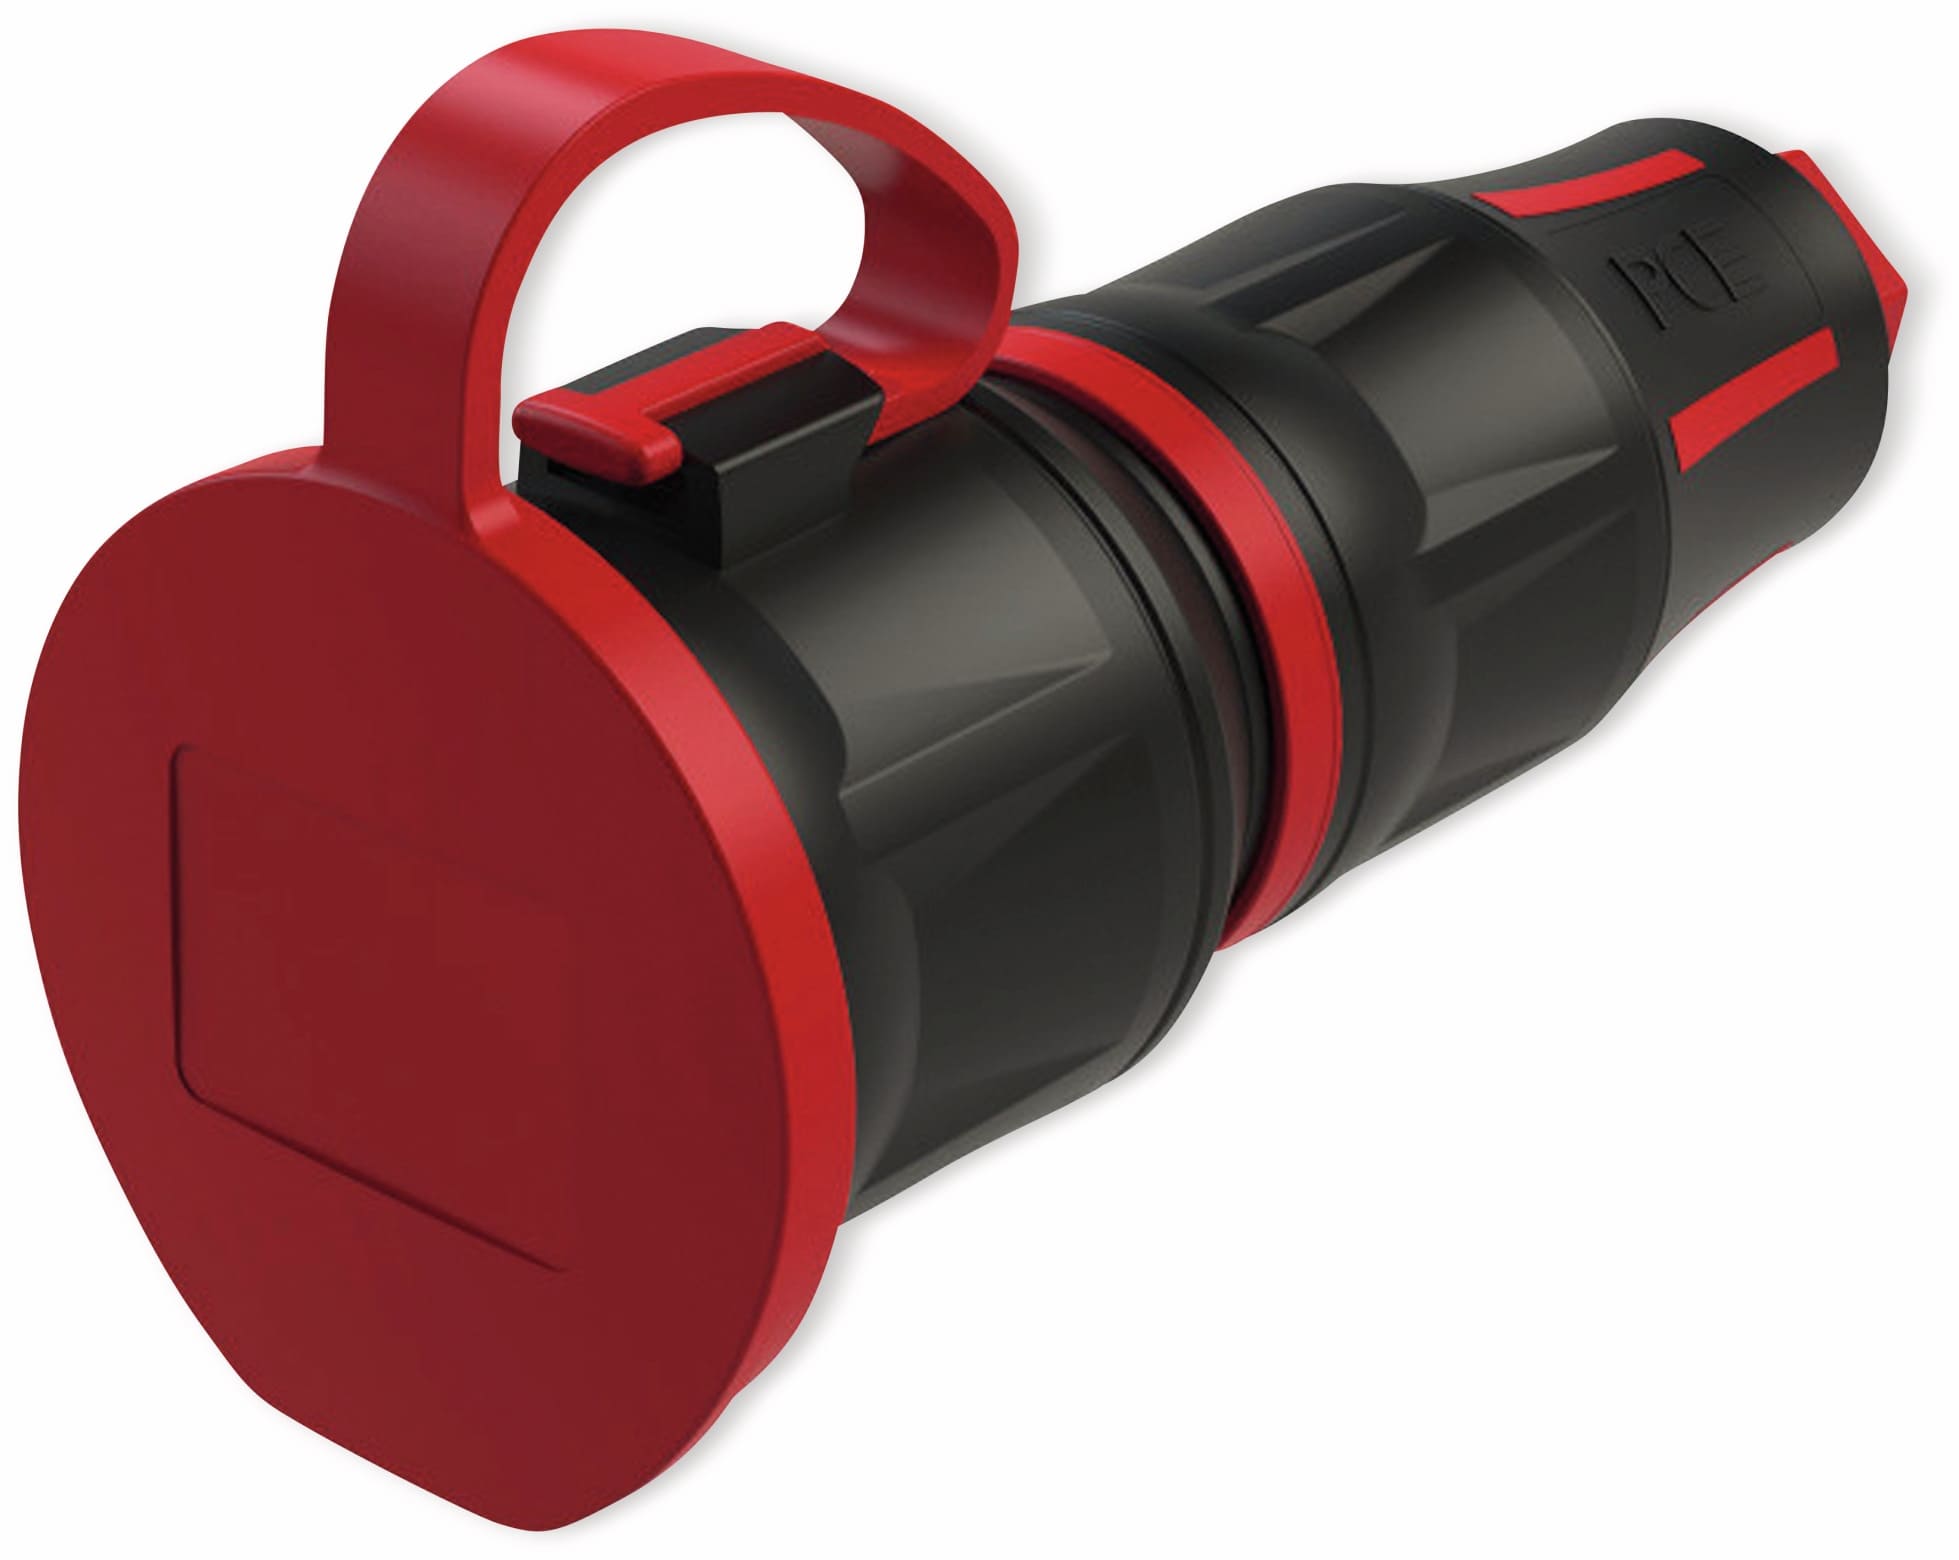 PCE Schutzkontaktkupplung TopTaurus2, mit Deckel, schwarz/rot, mit LED